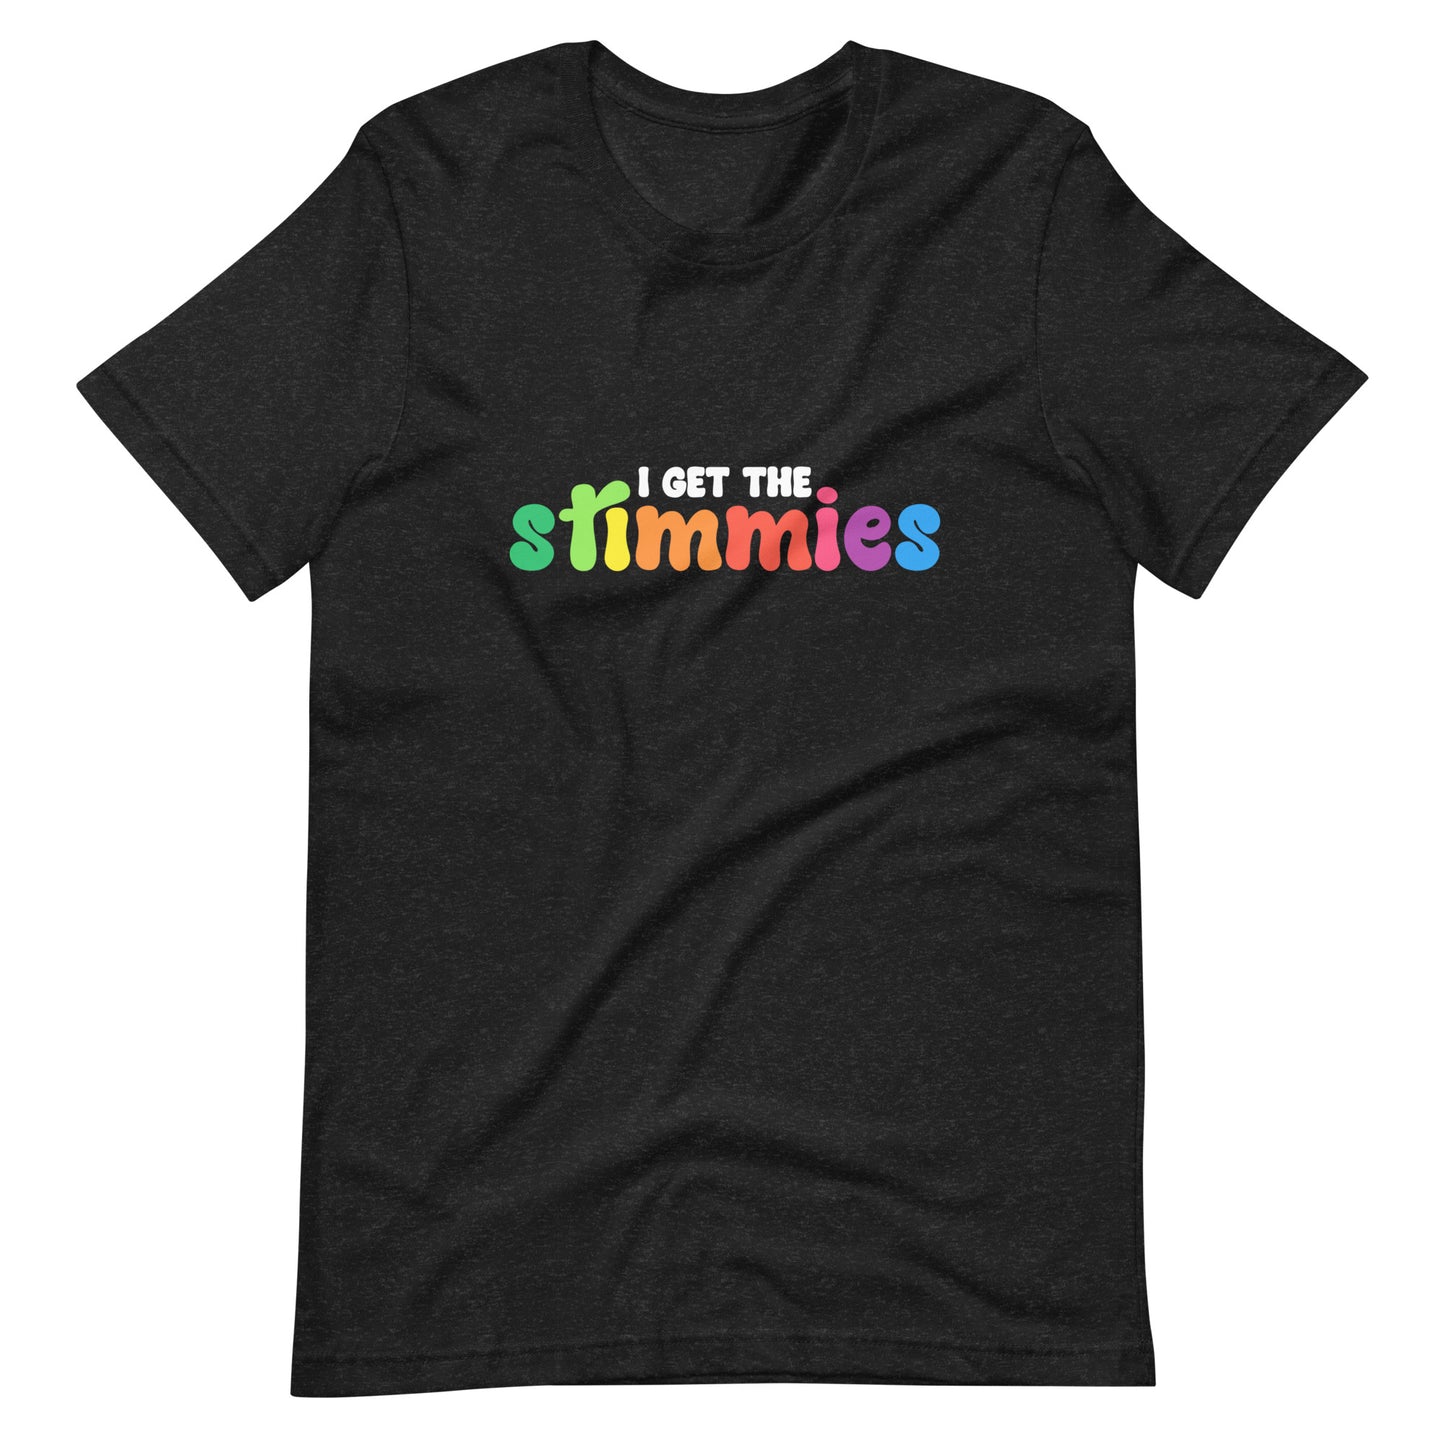 I GET THE STIMMIES Tshirt